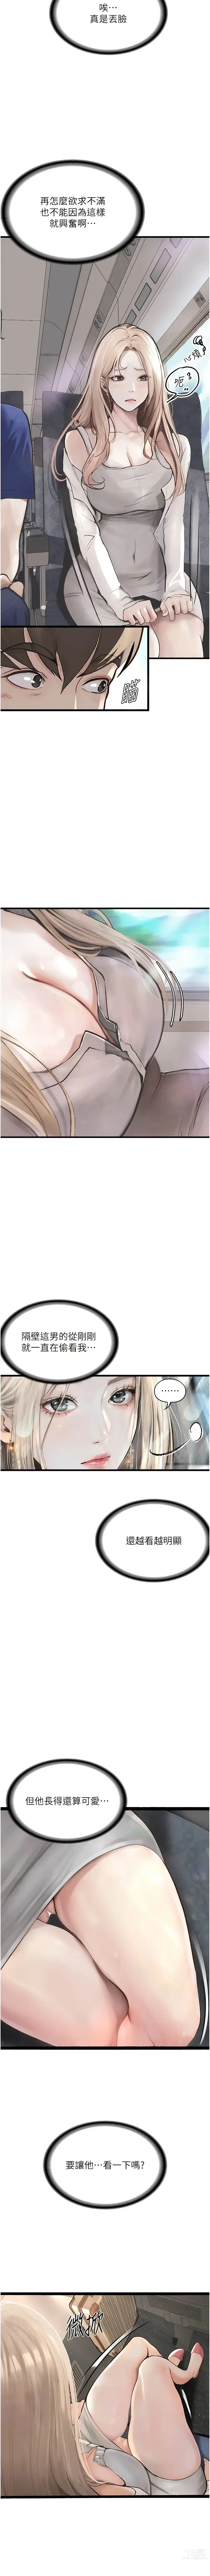 Page 9 of manga 墮落物語1-11